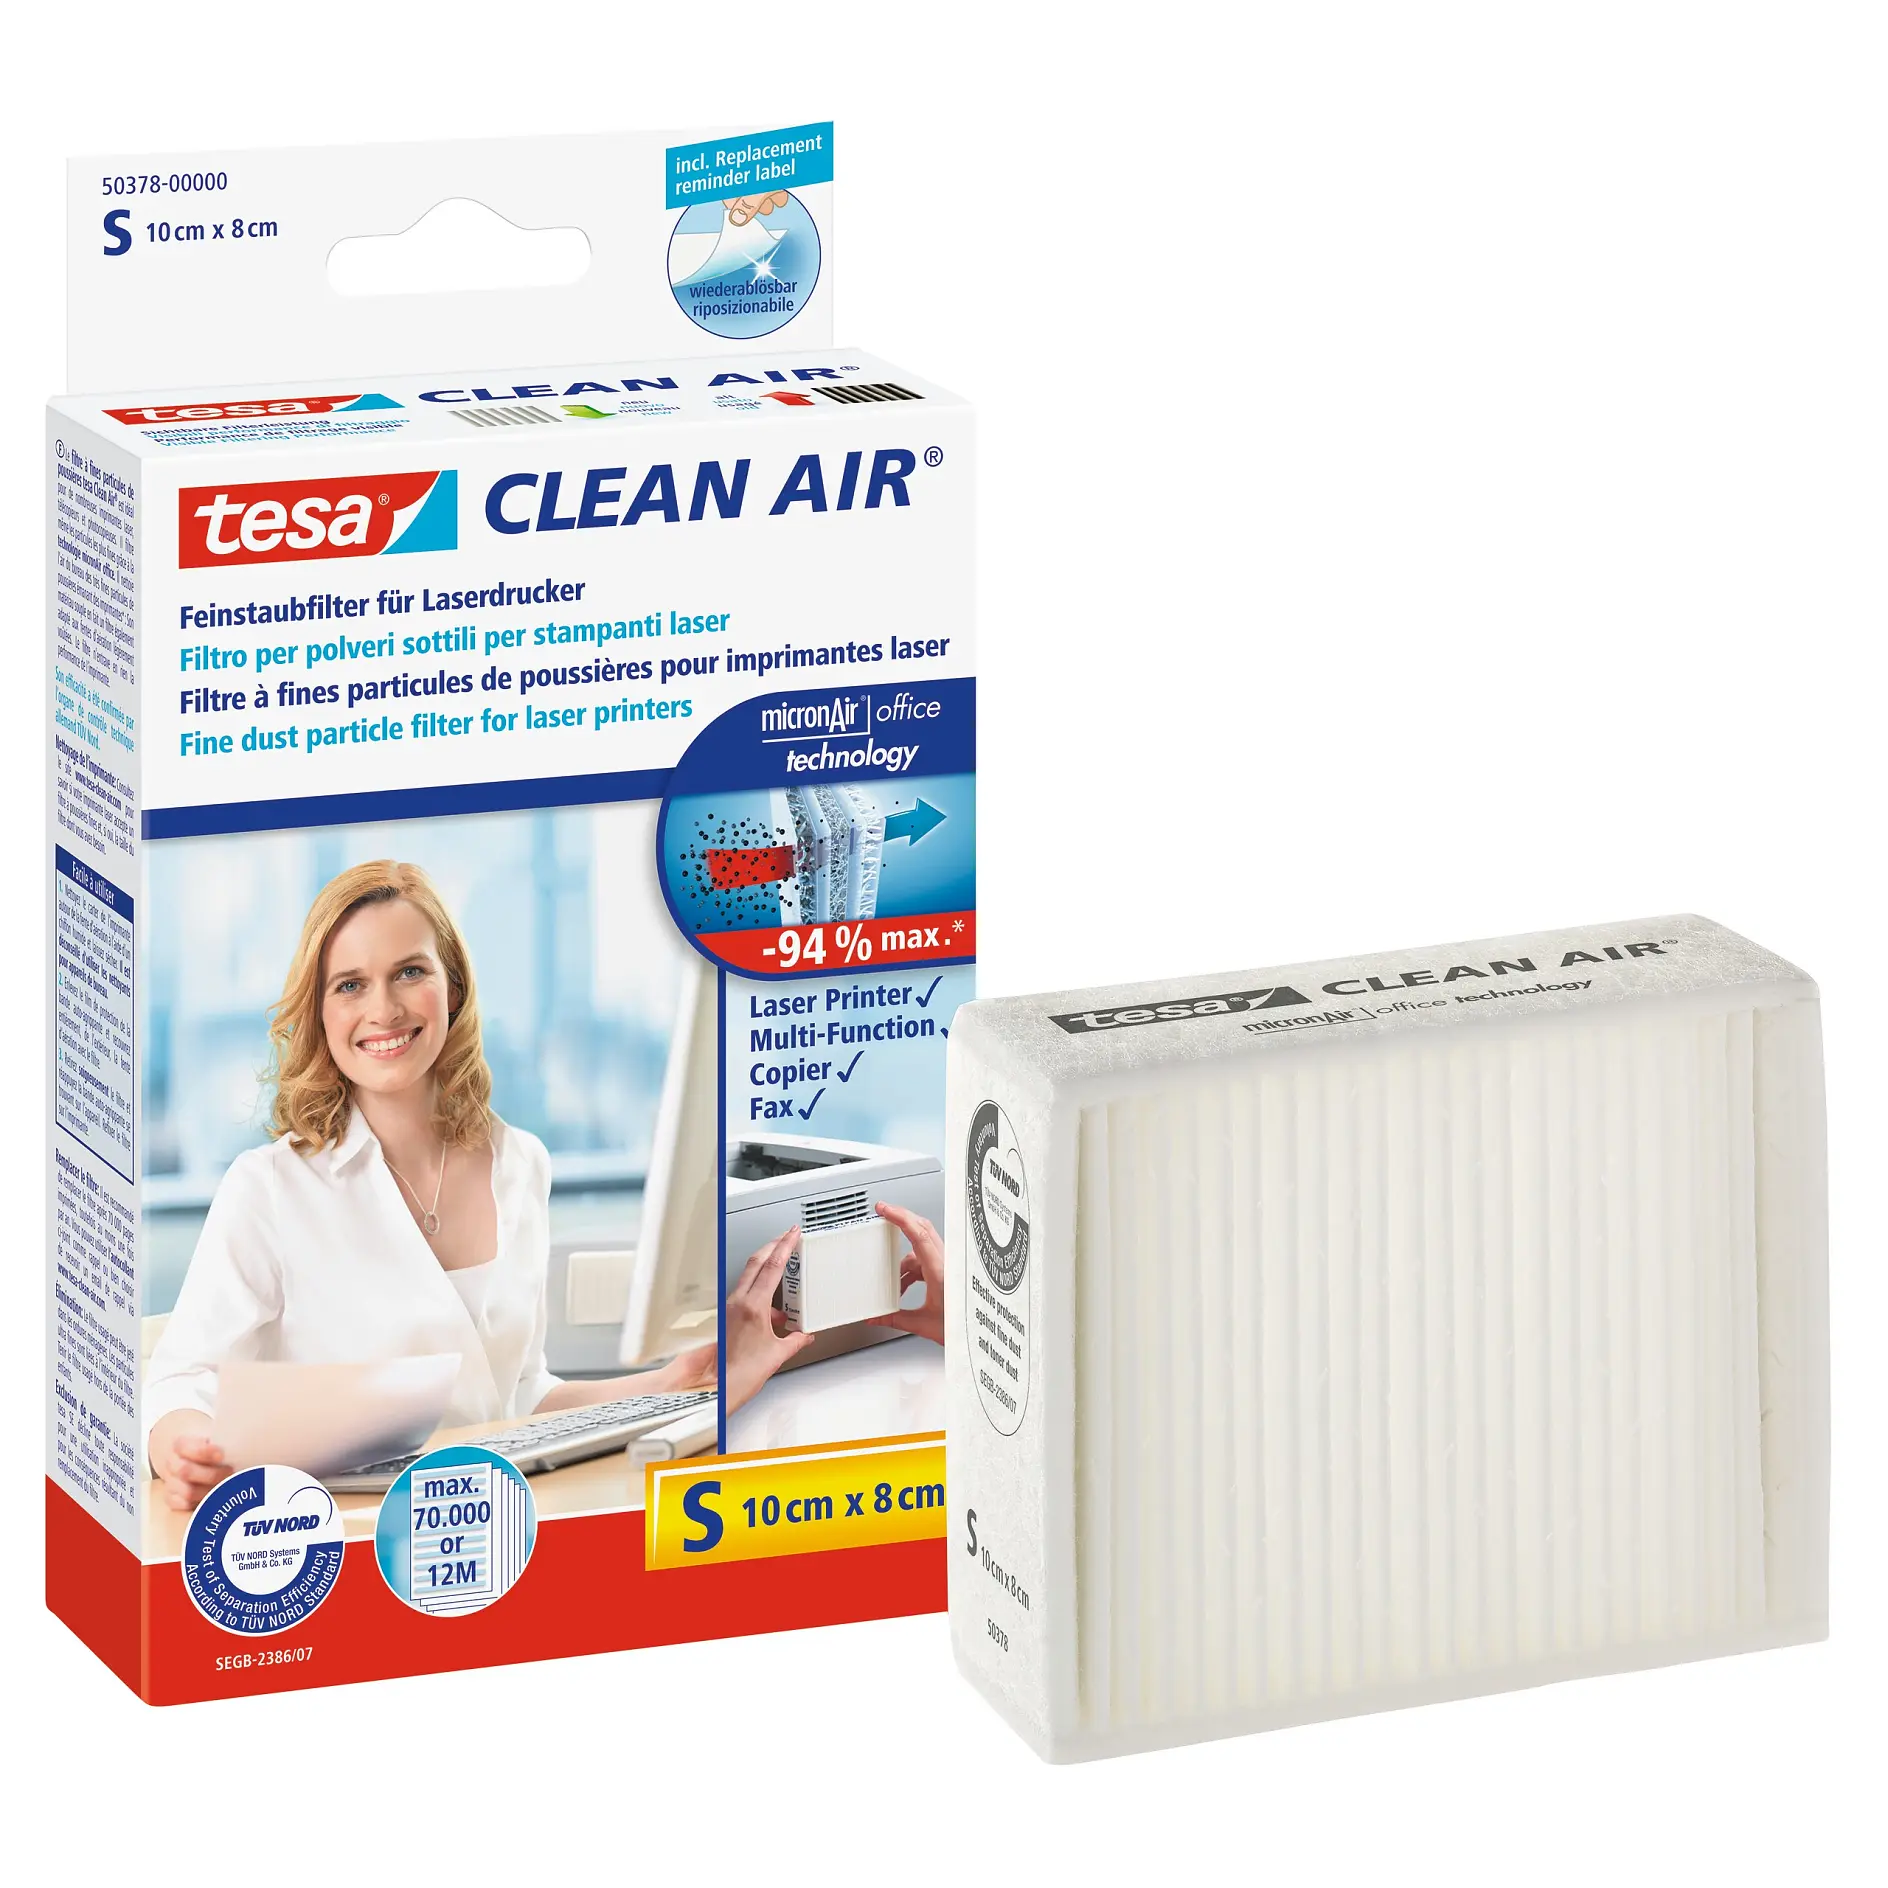 [en-en] tesa Clean Air fine dust particle filter for printers, size S